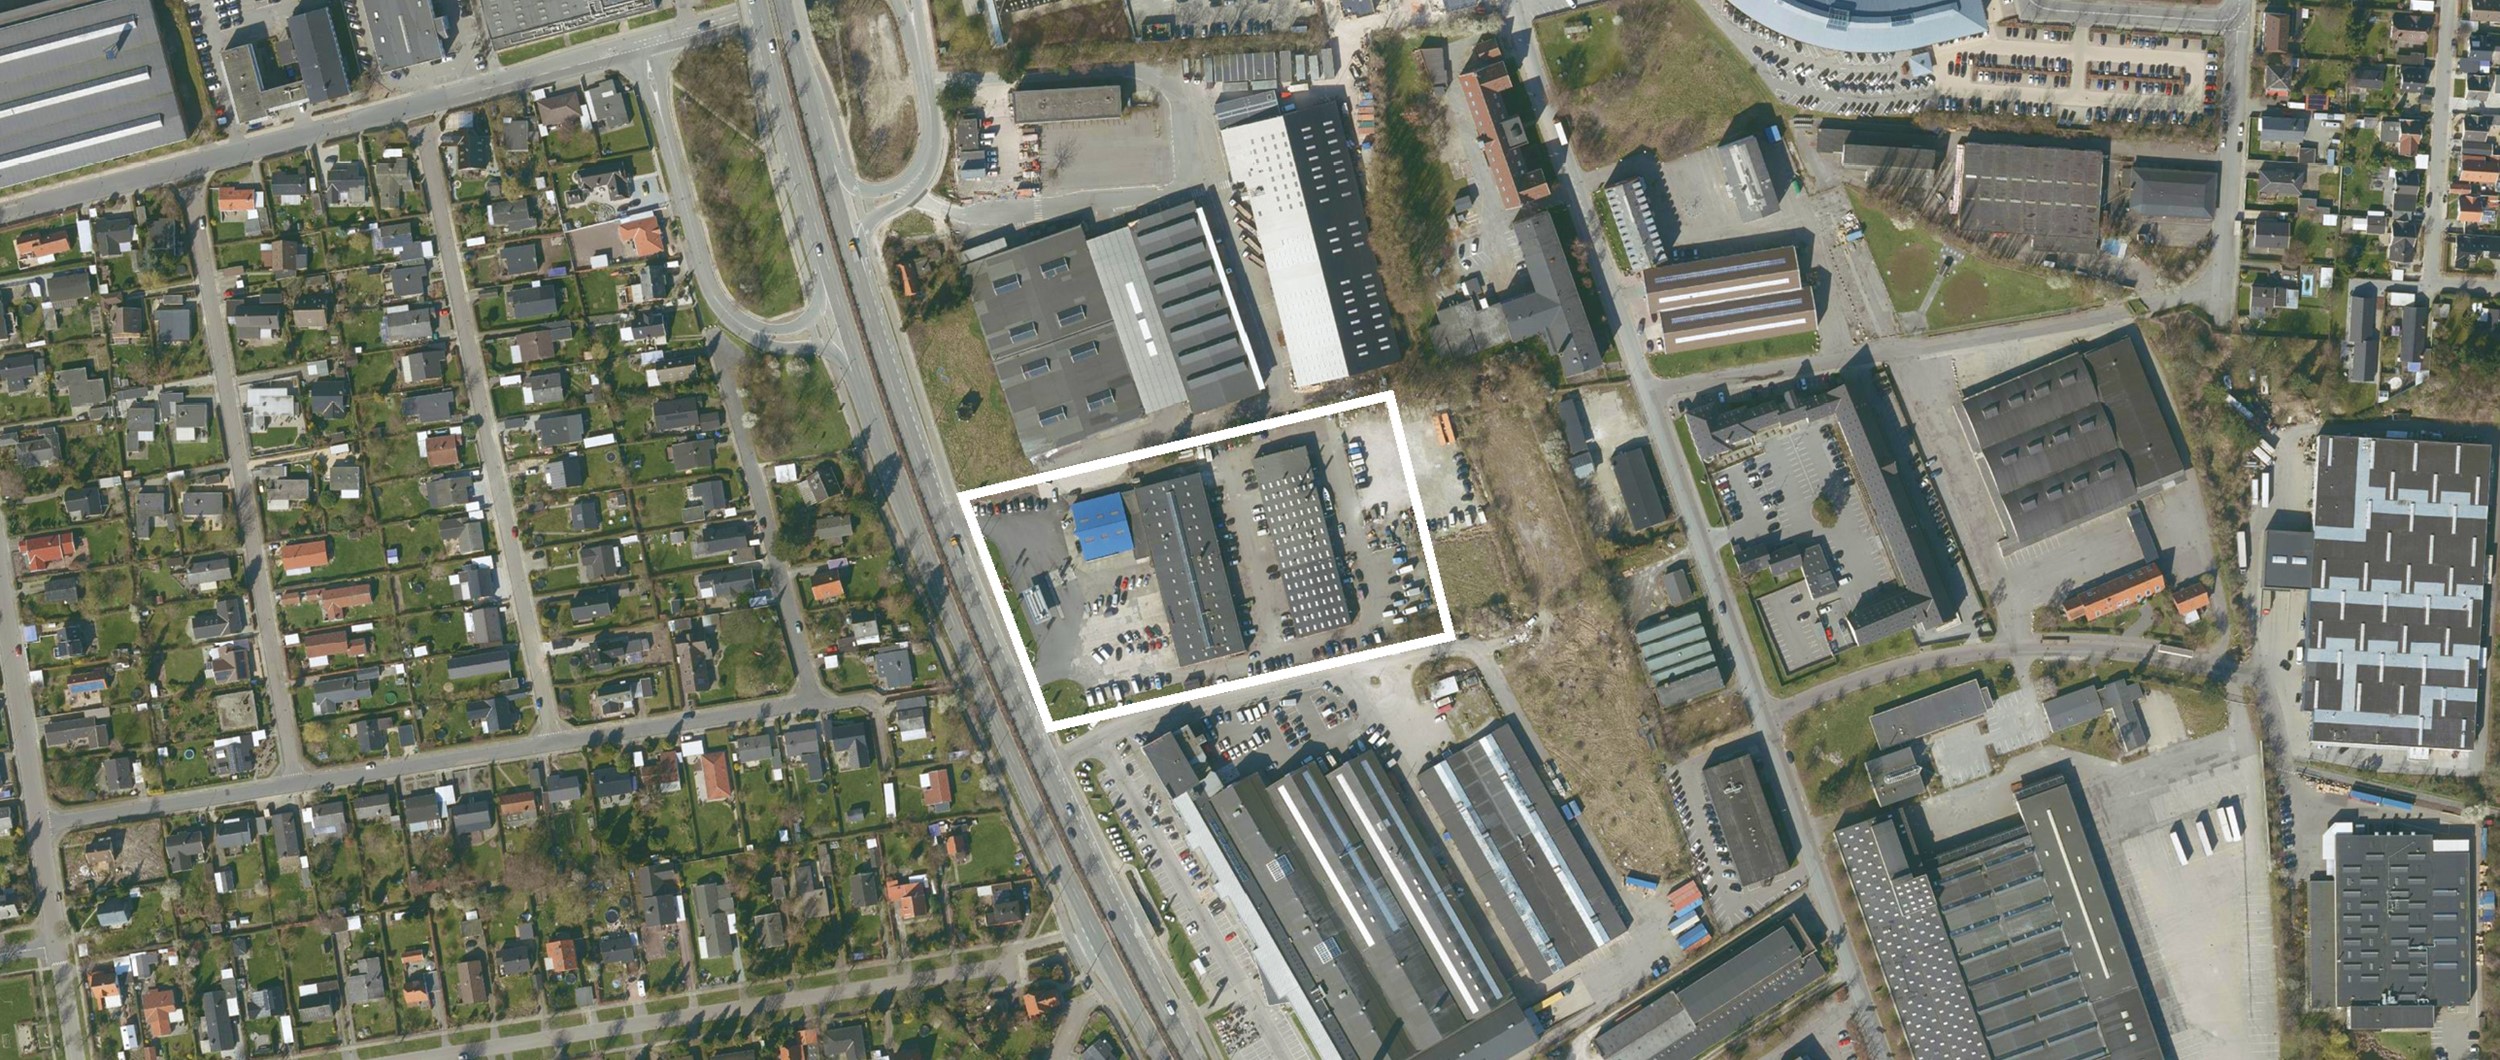 Byggeriet opføres i det gamle Kirkebjerg Erhvervspark område. Industri området blev etableret helt tilbage i 1940erne.